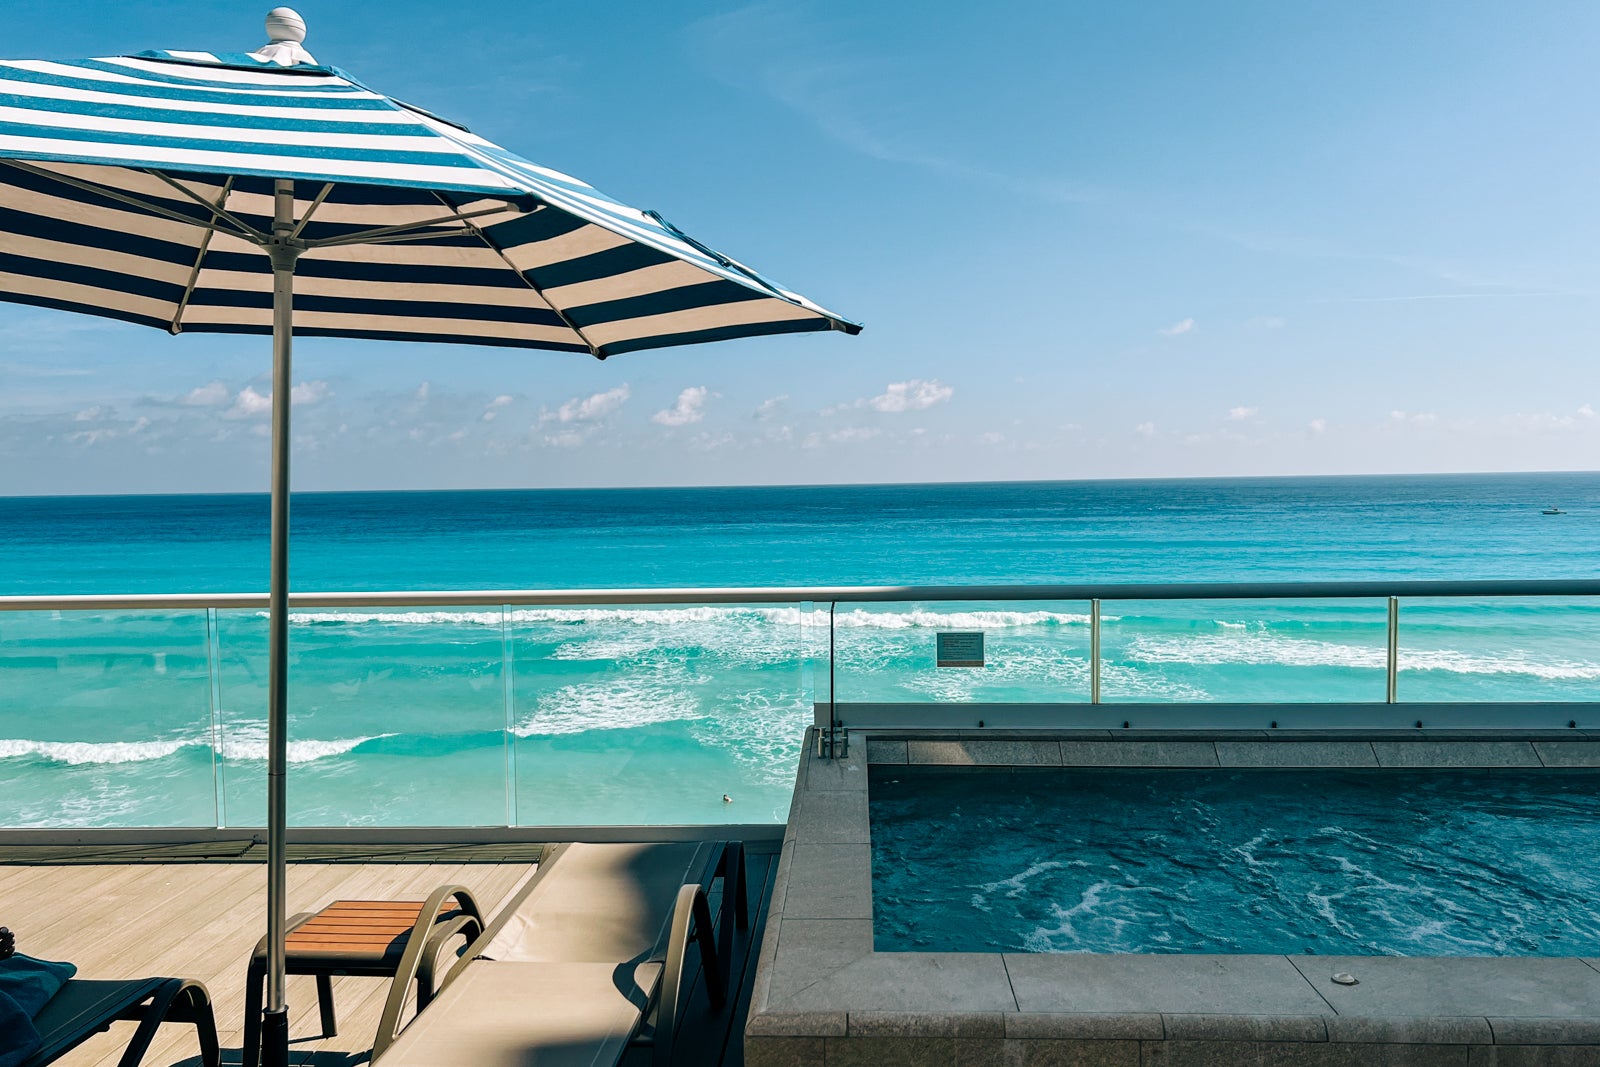 hilton cancun mar caribe pool and beach view